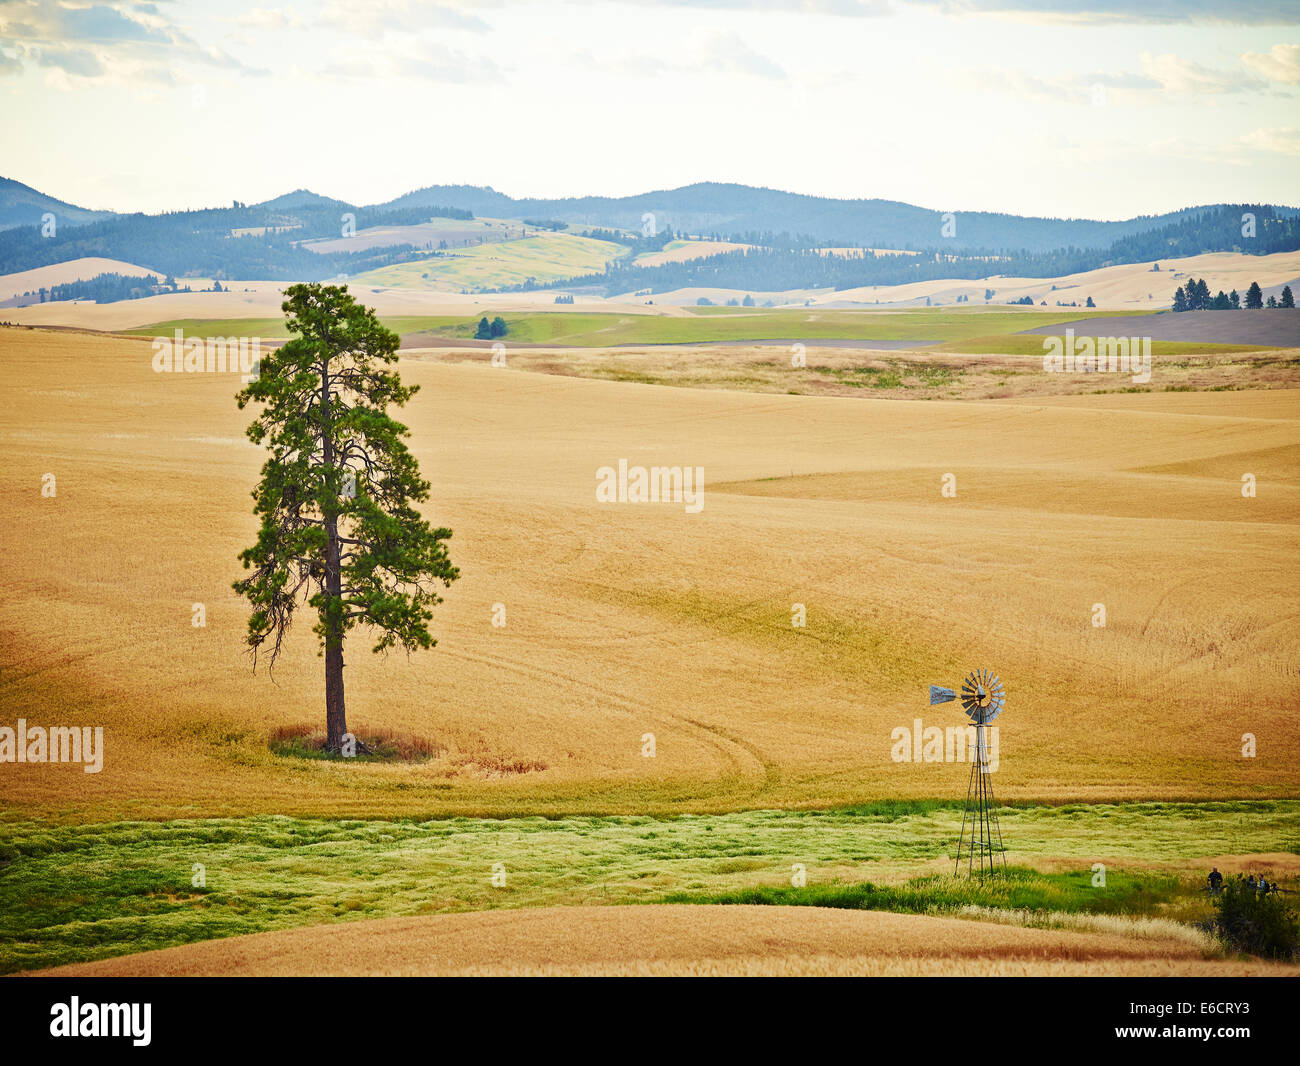 Einbeinigen Baum und Windmühle in Weizenfeldern mit sanften Hügeln in Palouse Scenic Byway, Washington, Vereinigte Staaten von Amerika Stockfoto